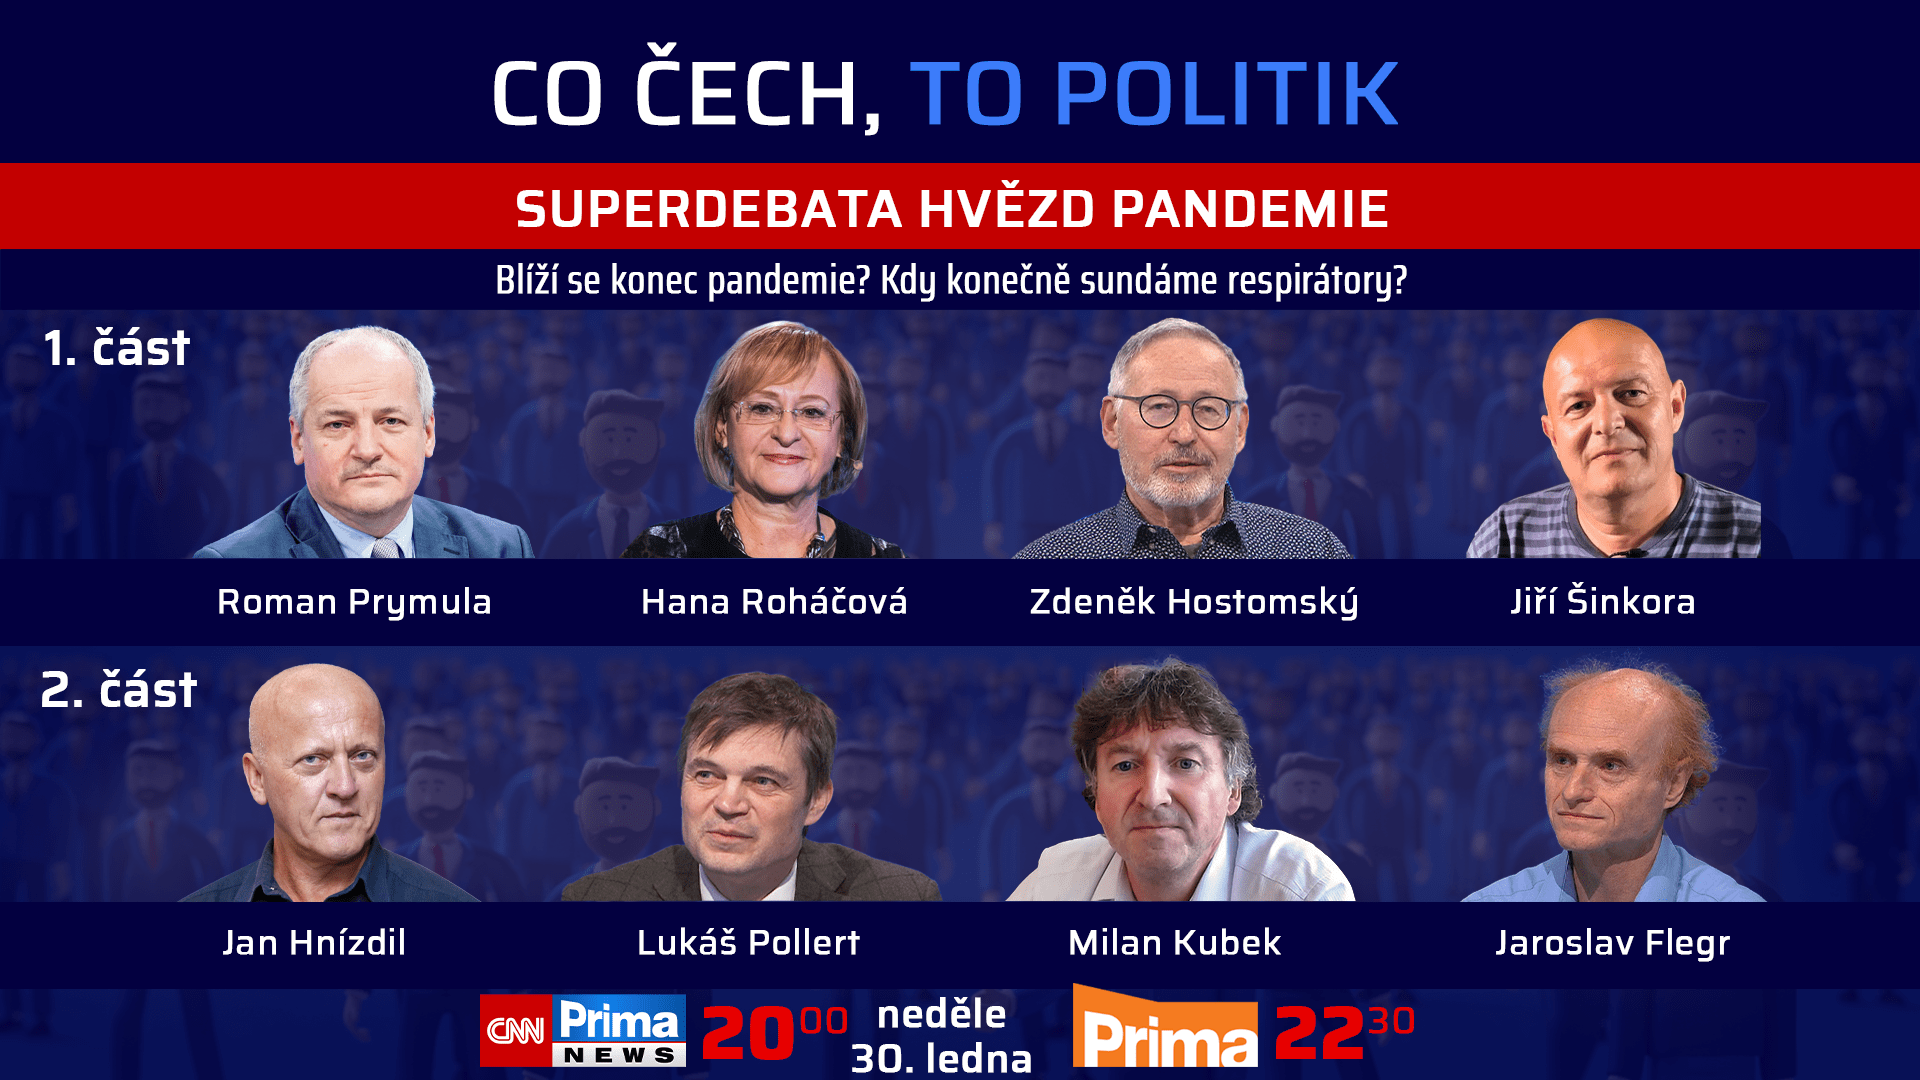 Hosty speciálu Co Čech, to politik budou odborníci a lékaři, kteří se aktivně zapojovali do diskuzí o pandemii koronaviru.